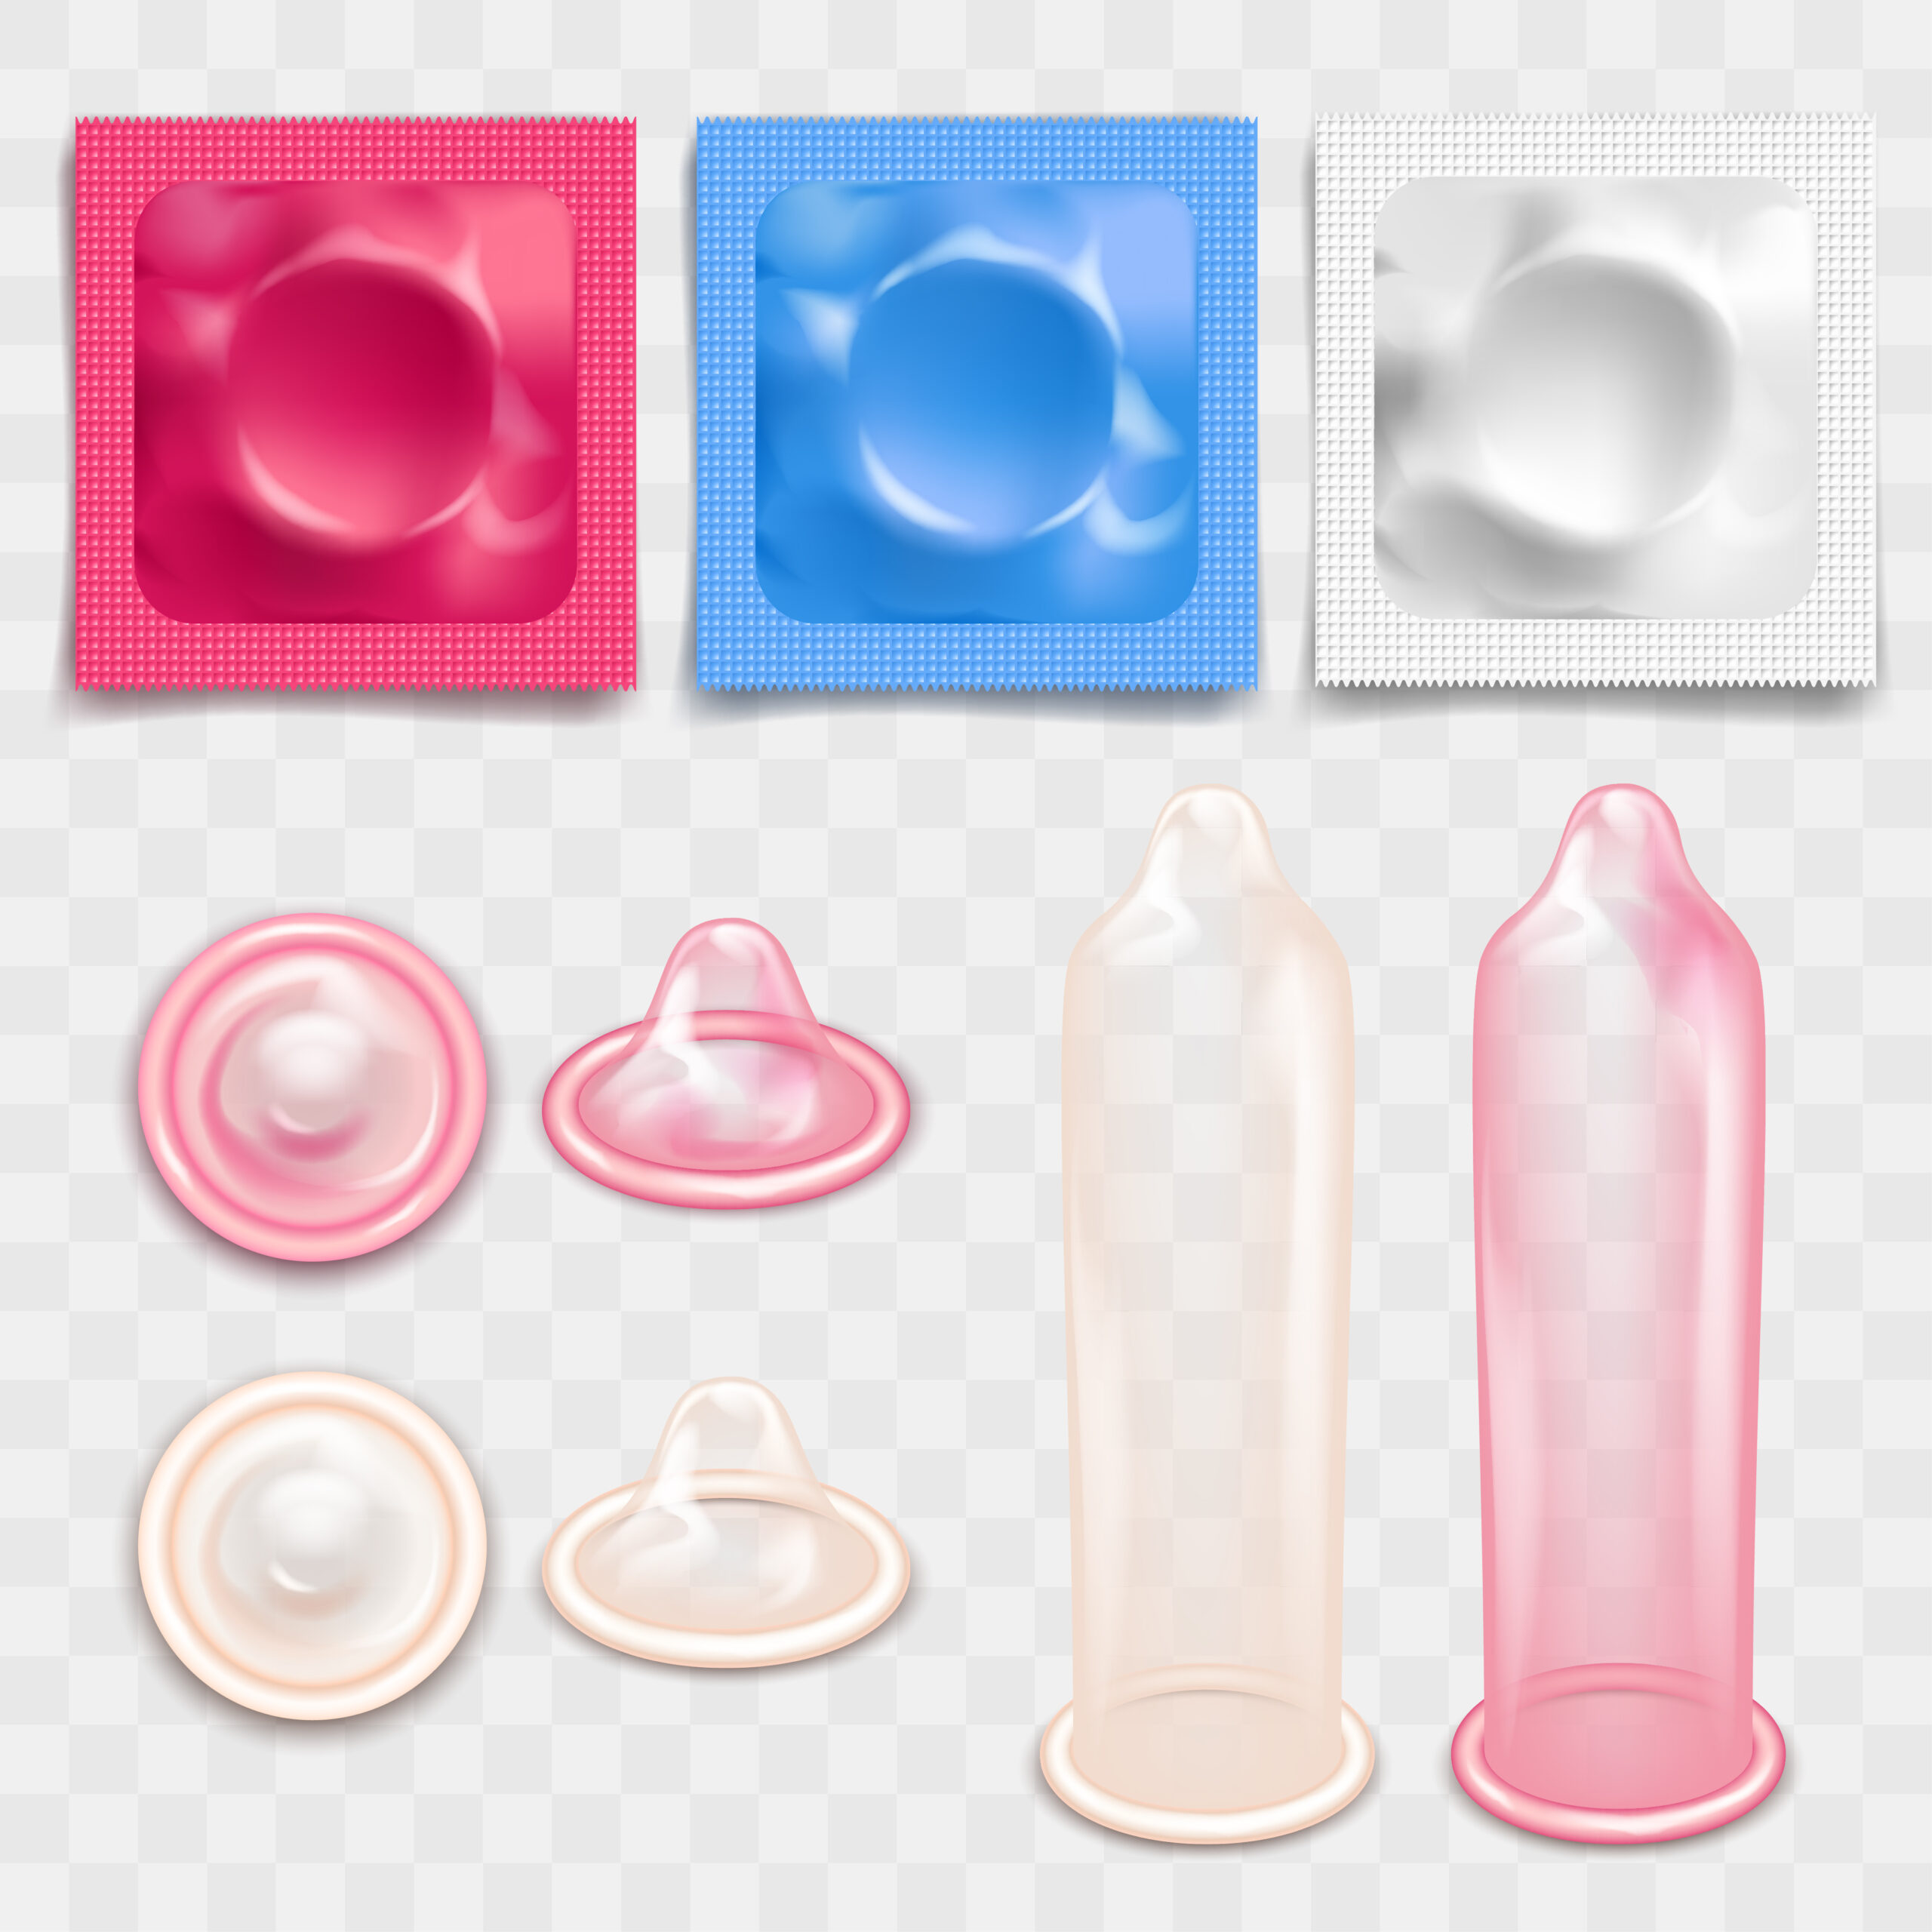 콘돔 종류